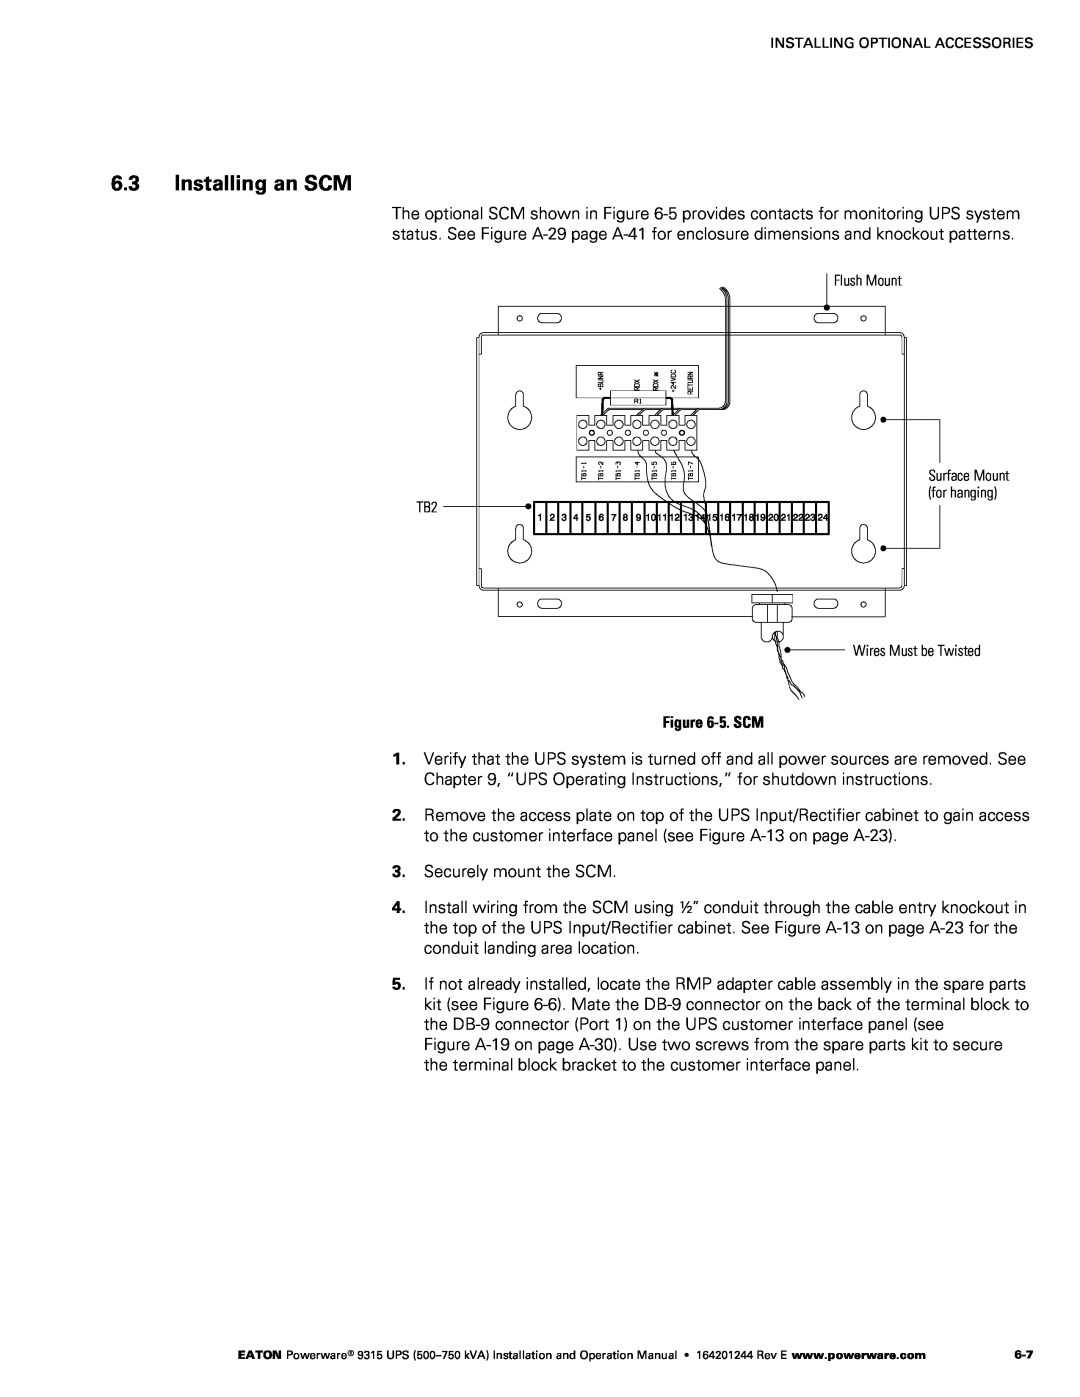 Powerware Powerware 9315 operation manual Installing an SCM, ‐5. SCM 